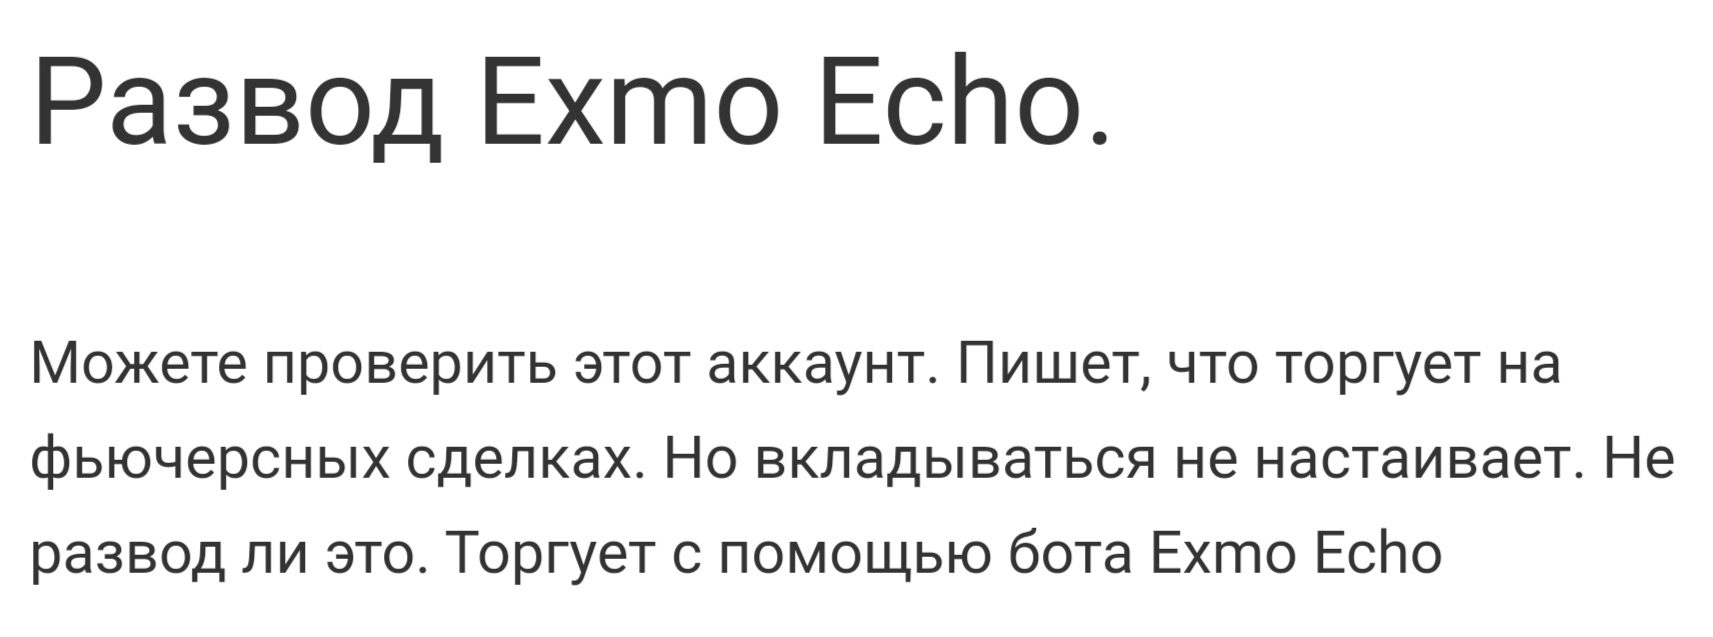 Отзывы о Exmo Echo